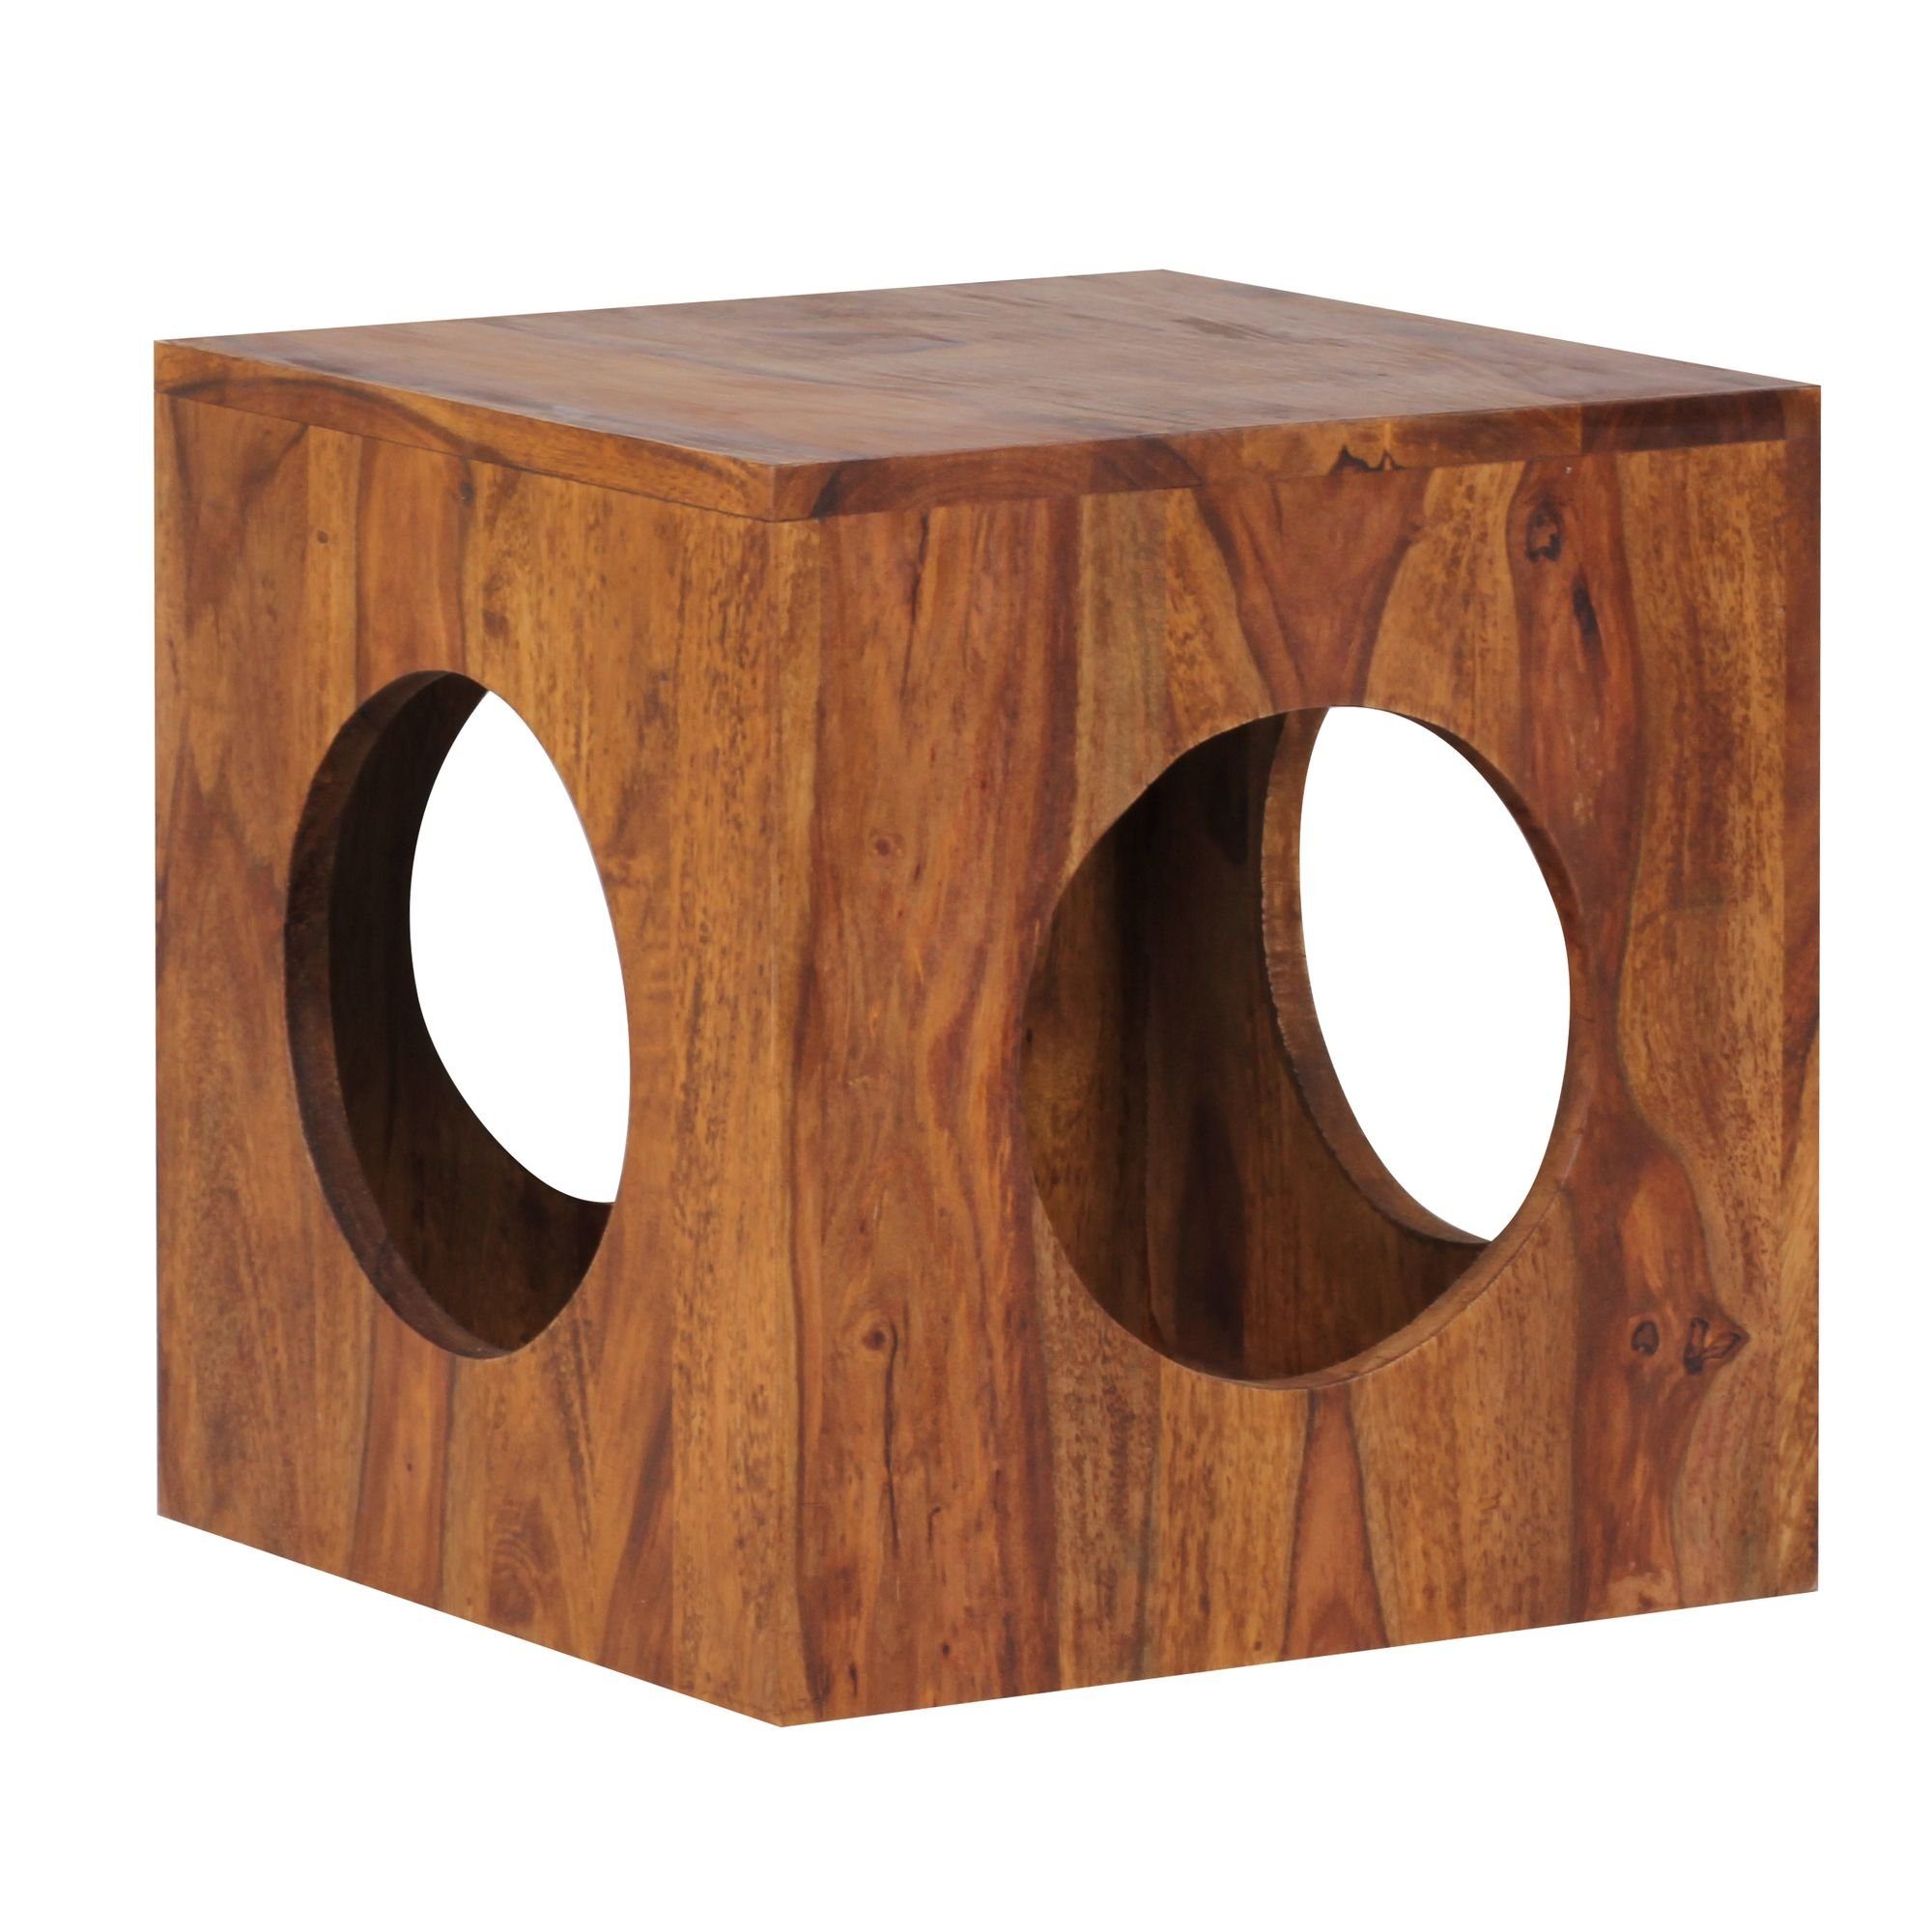 cm Wohnzimmer-Tisch 35x35 Sheesham MUMBAI Massivholz Landhaus-Stil Beistelltisch Couchtisch Massivholz möbelando cm, Cube quadratisch MUMBAI Beistelltisch Sheesham Design Beistelltisch 35x35